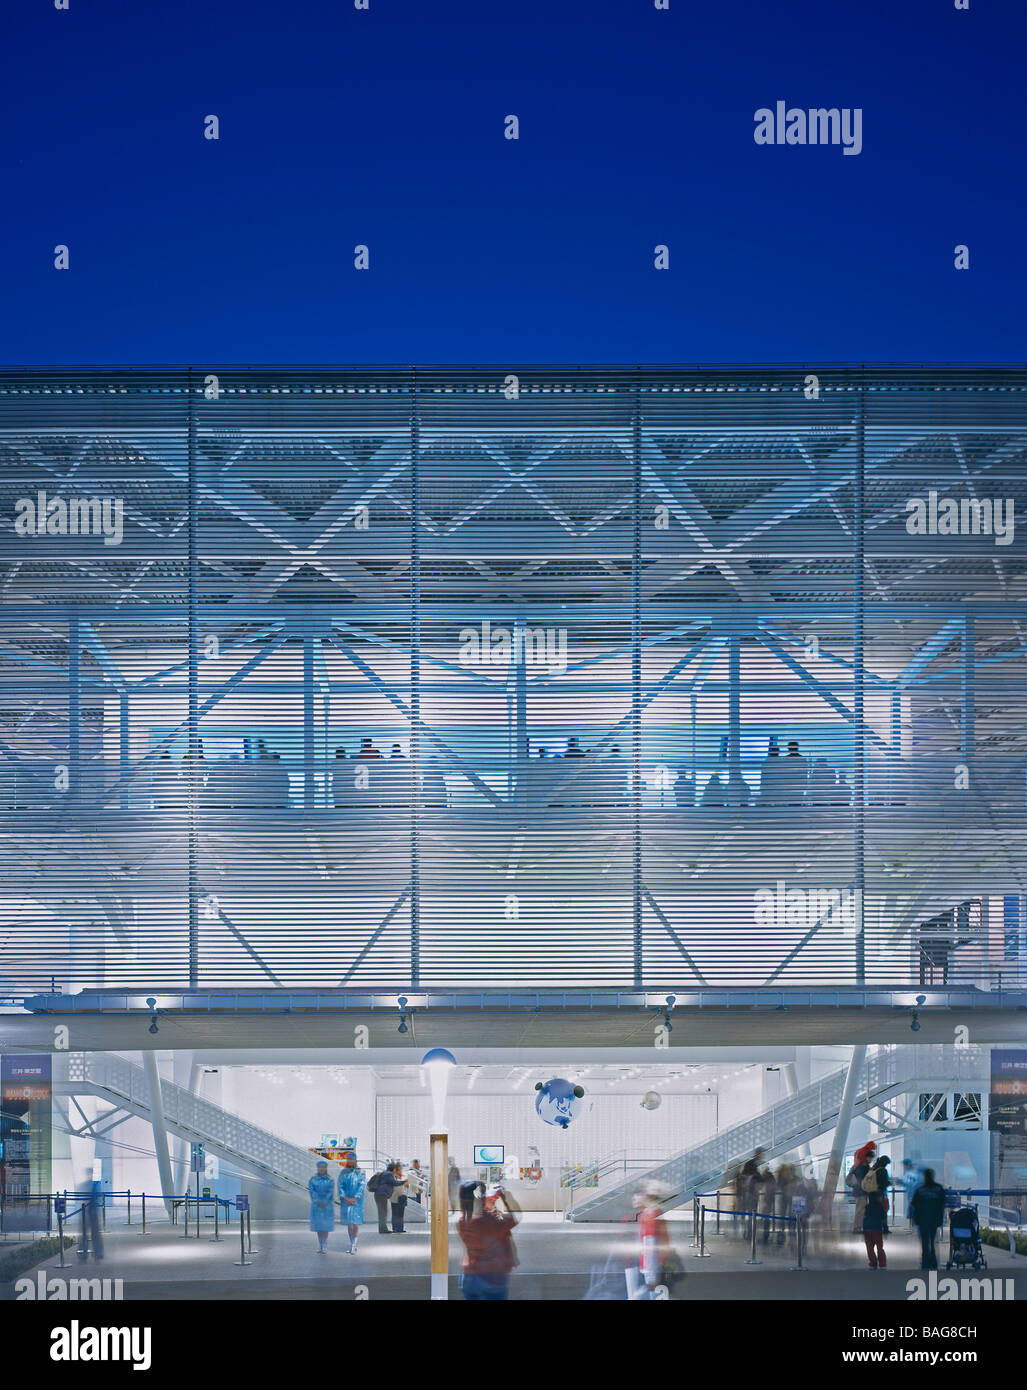 L'Expo d'Aichi de Nagakuté,, Japon, Tadasu Ohe, Aichi expo sommaire au crépuscule. Banque D'Images